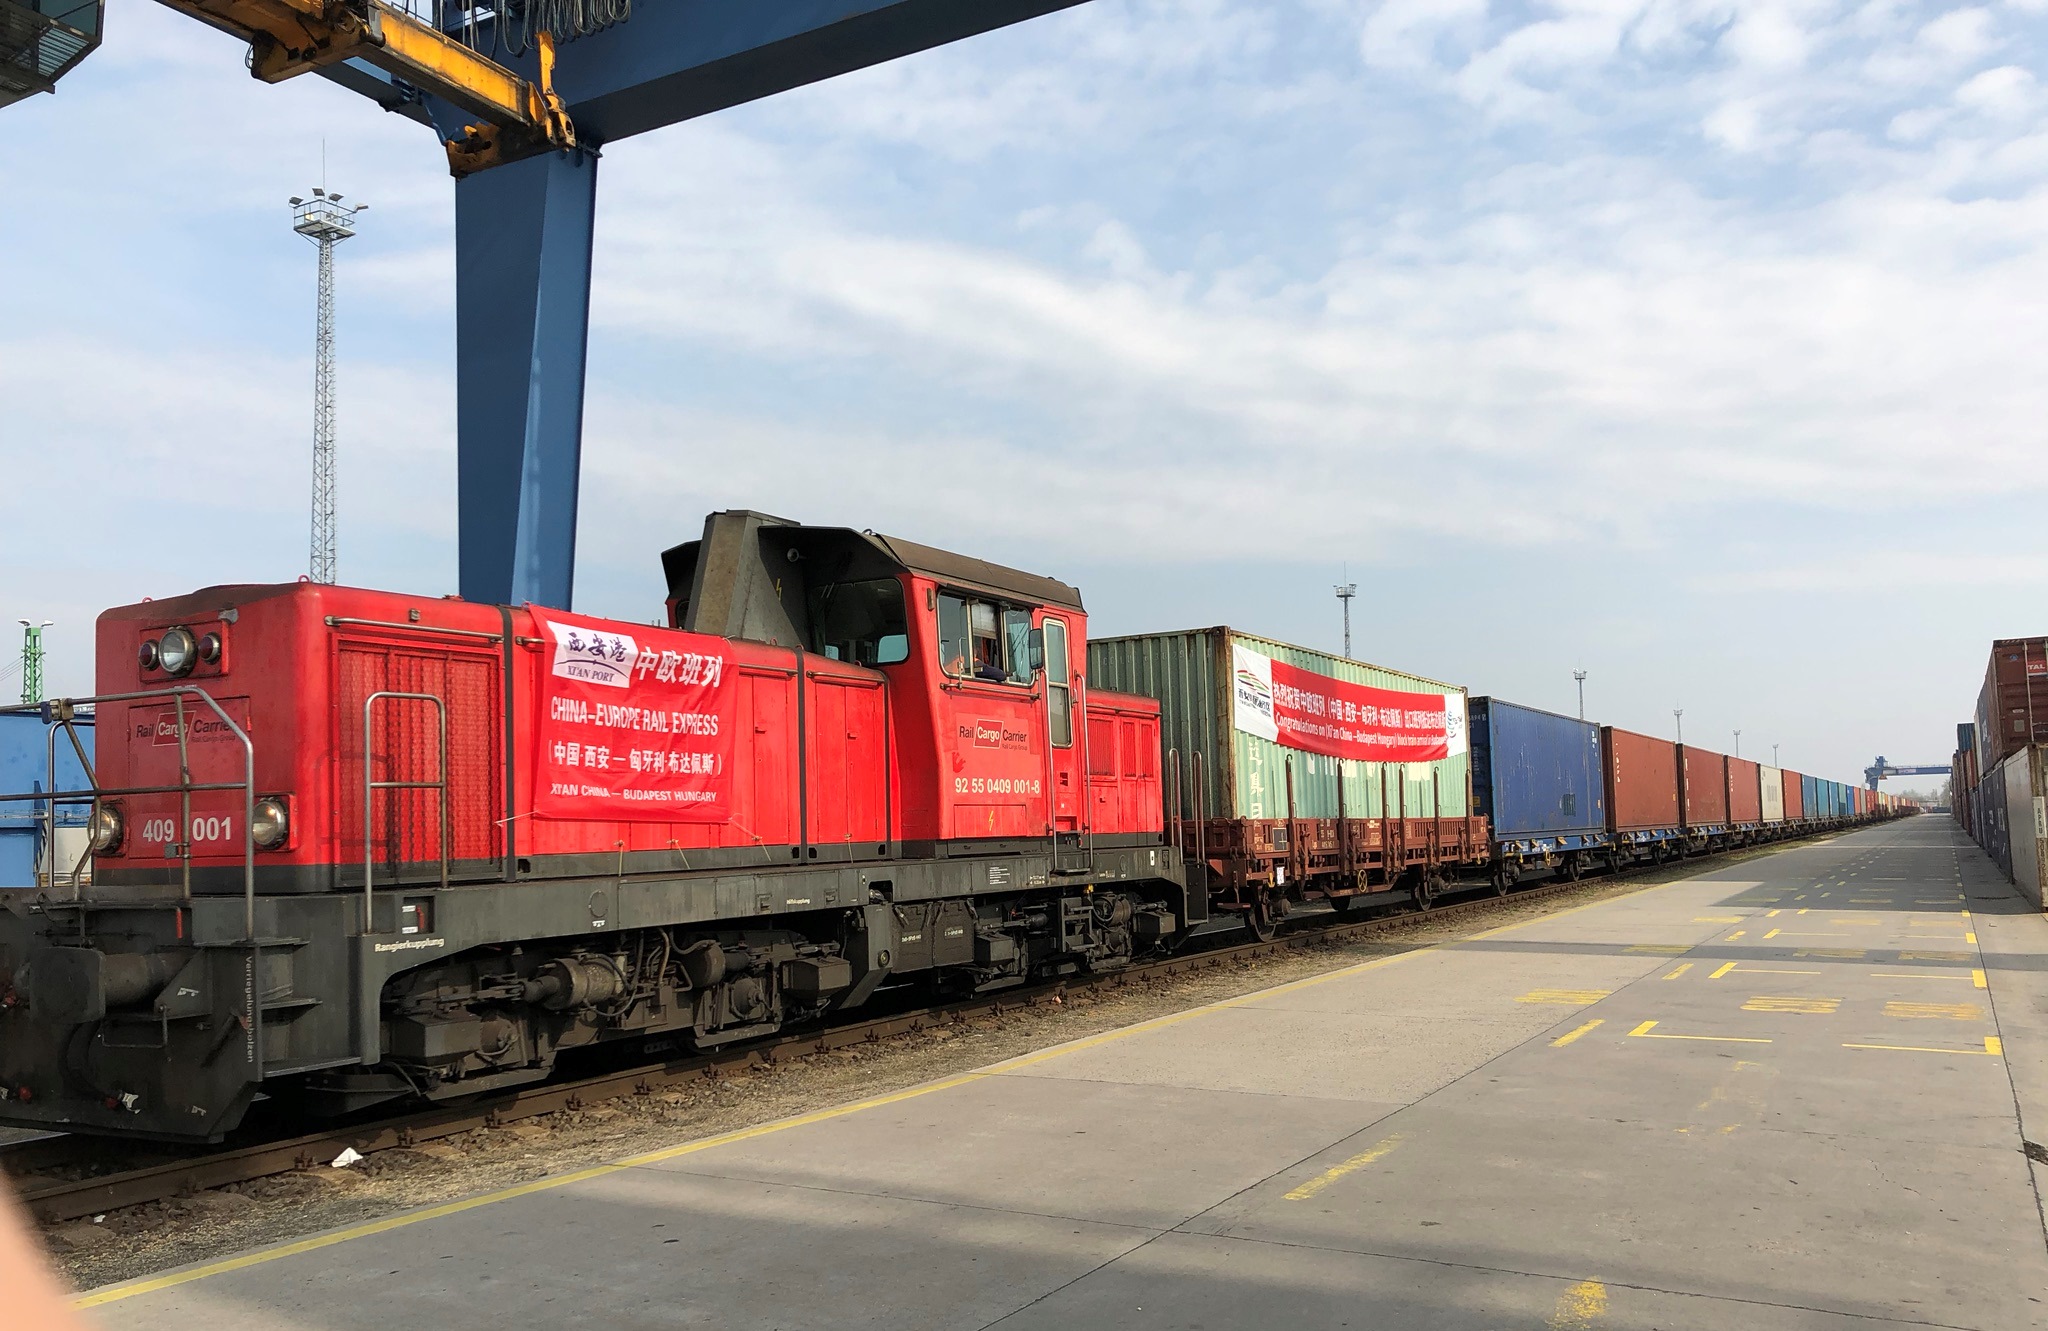 Megkezdődött a rendszeres vasúti konténerfuvarozás Hszian és a Rail Cargo Terminal - BILK között